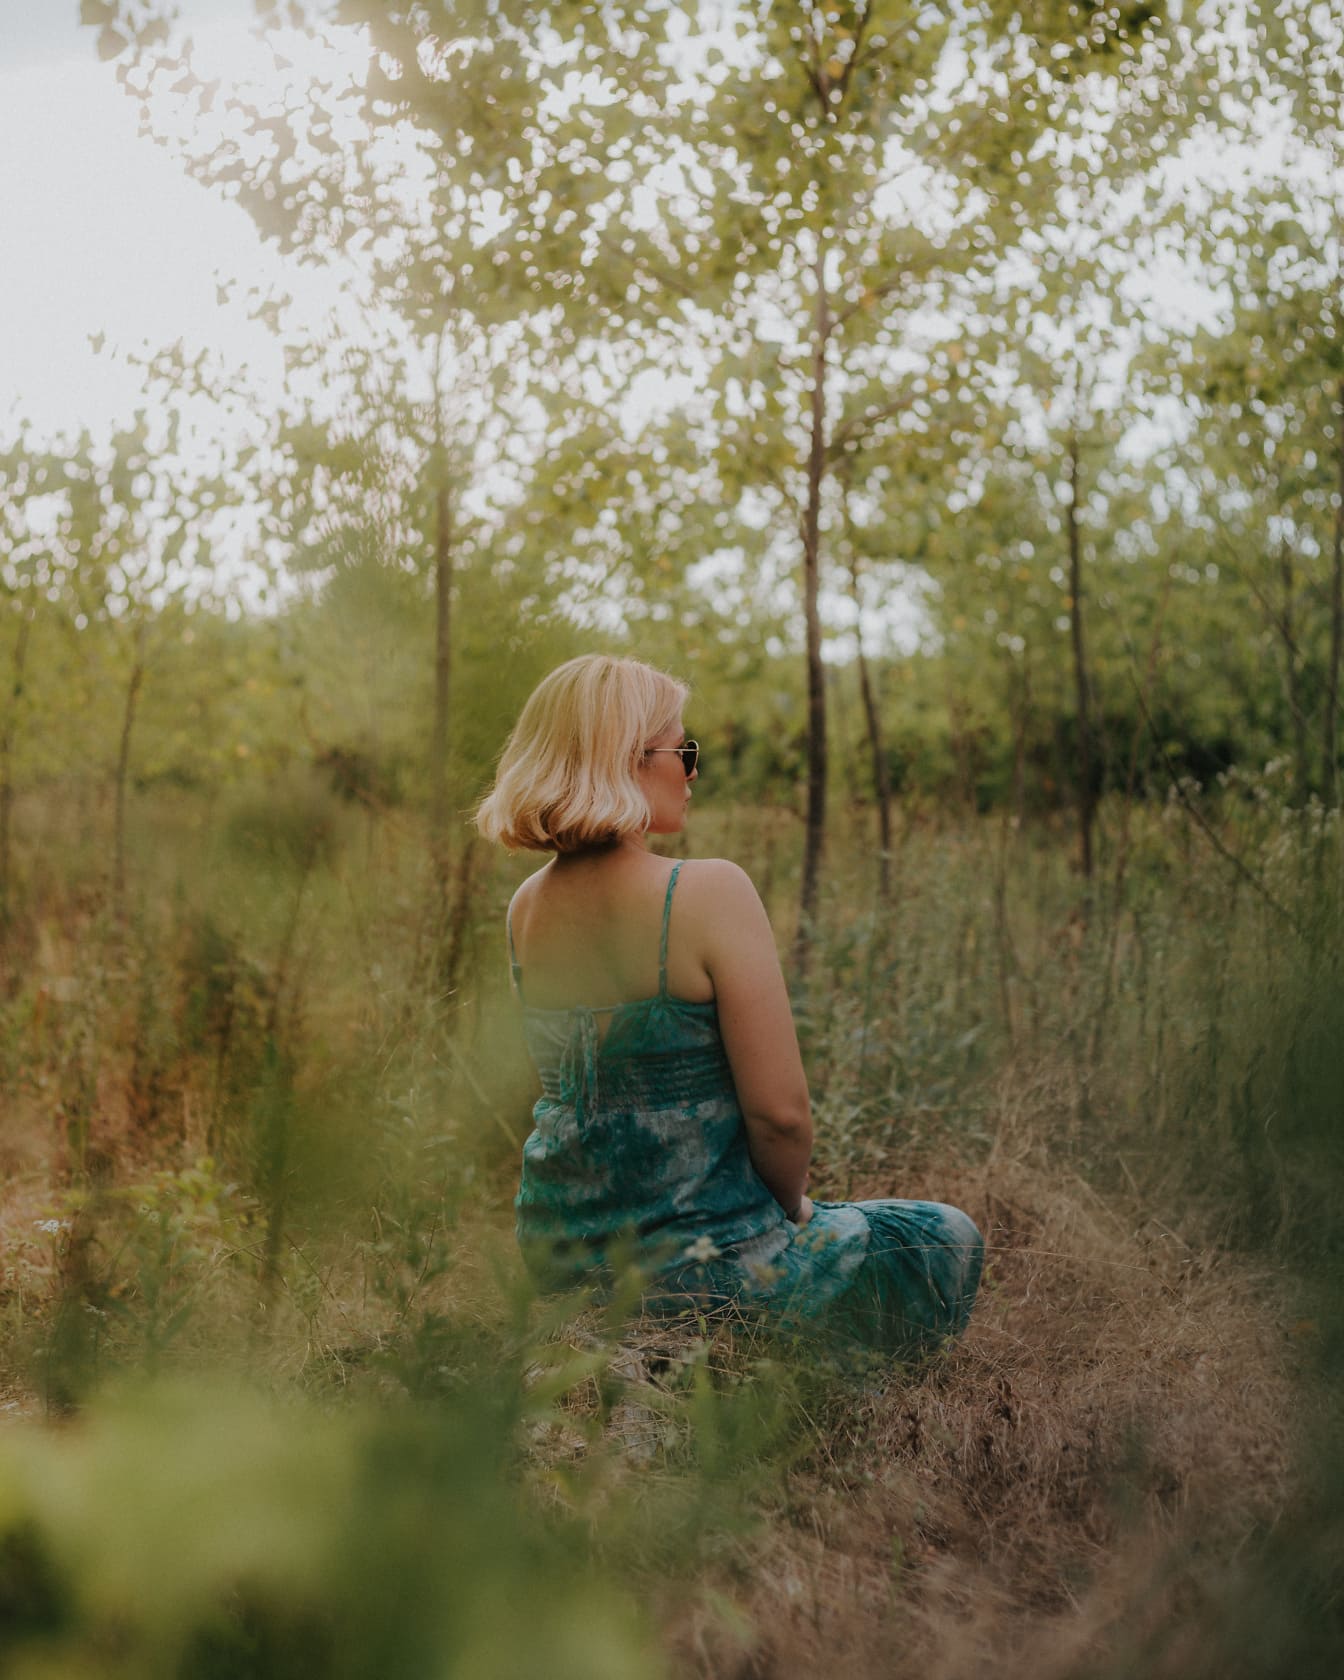 Ung kvinde sidder og mediterer i skoven